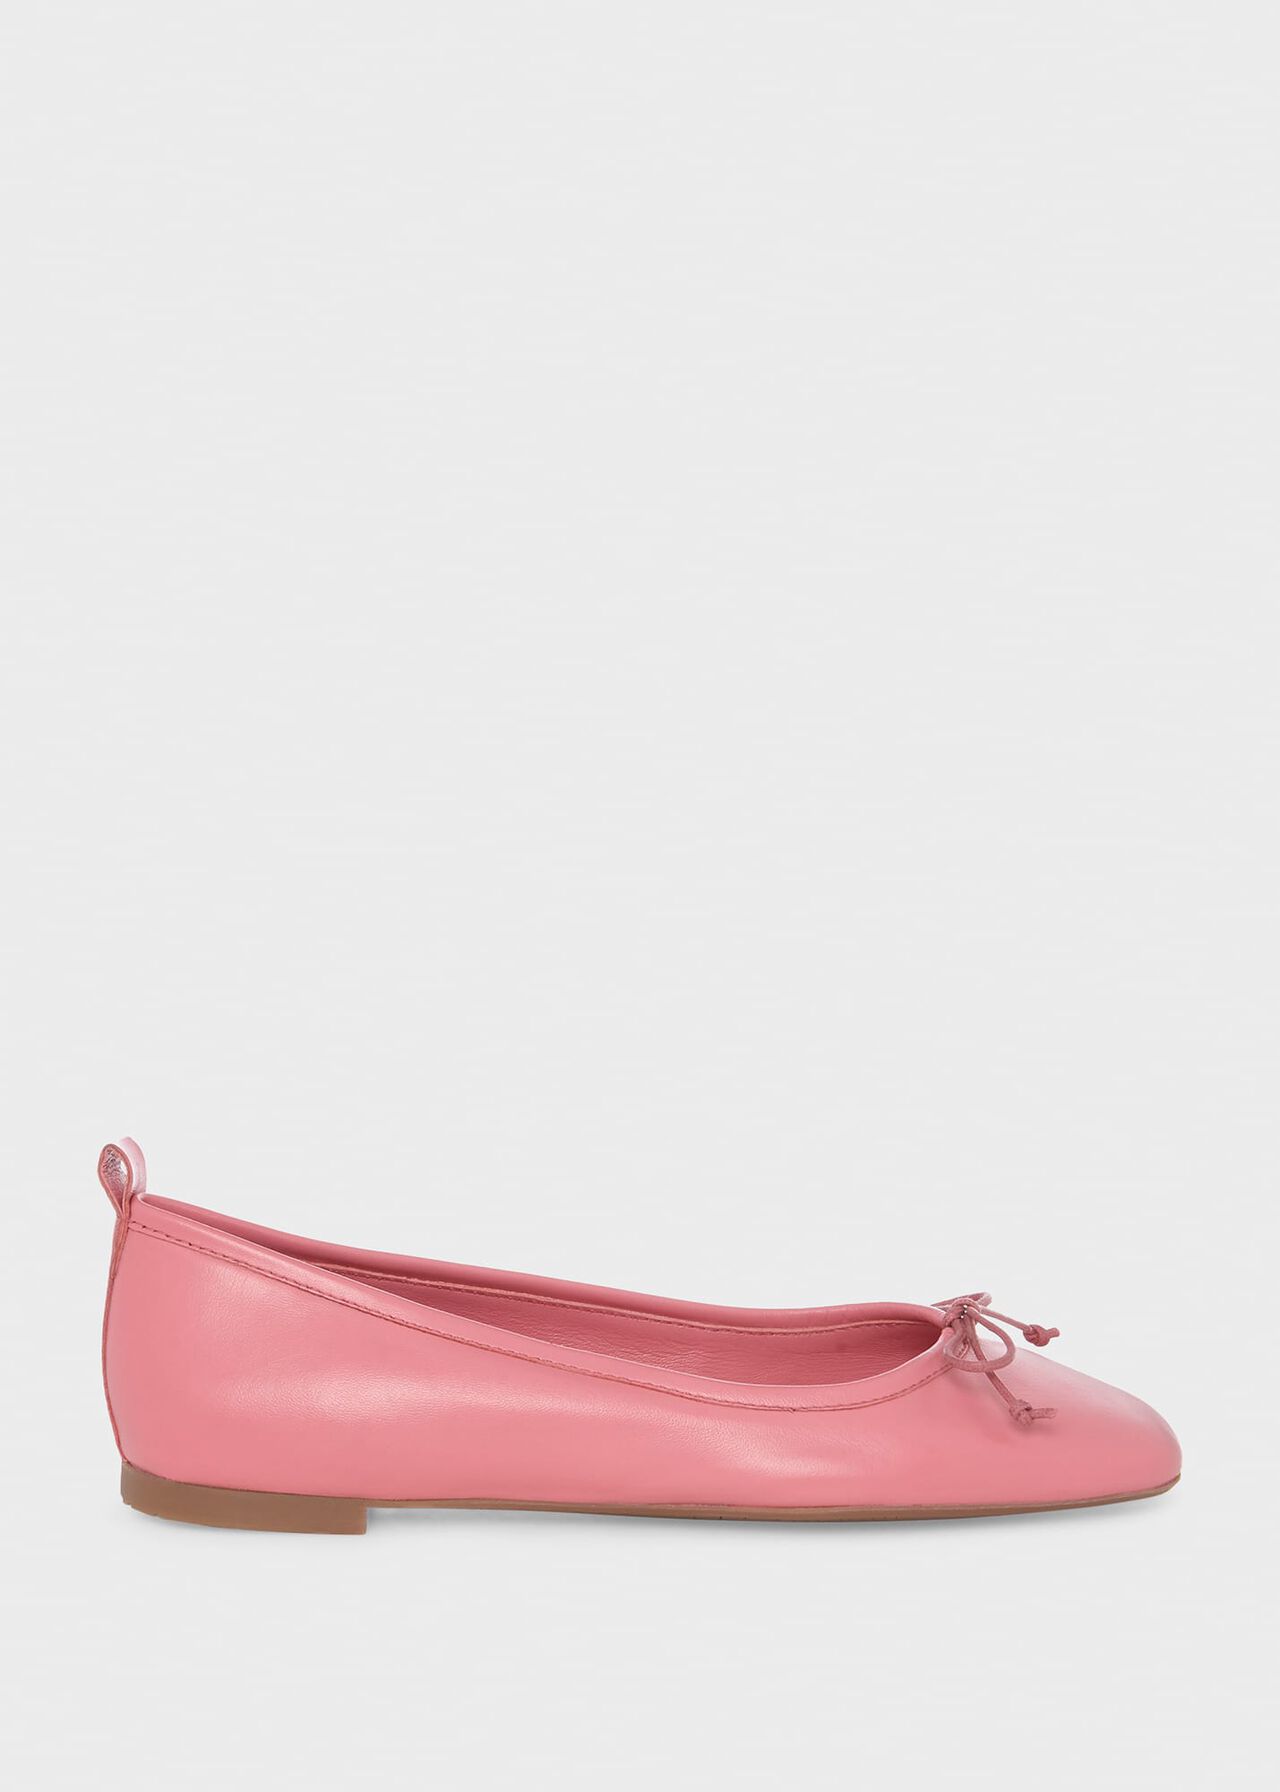 Hattie Ballet Flats, Peony Pink, hi-res